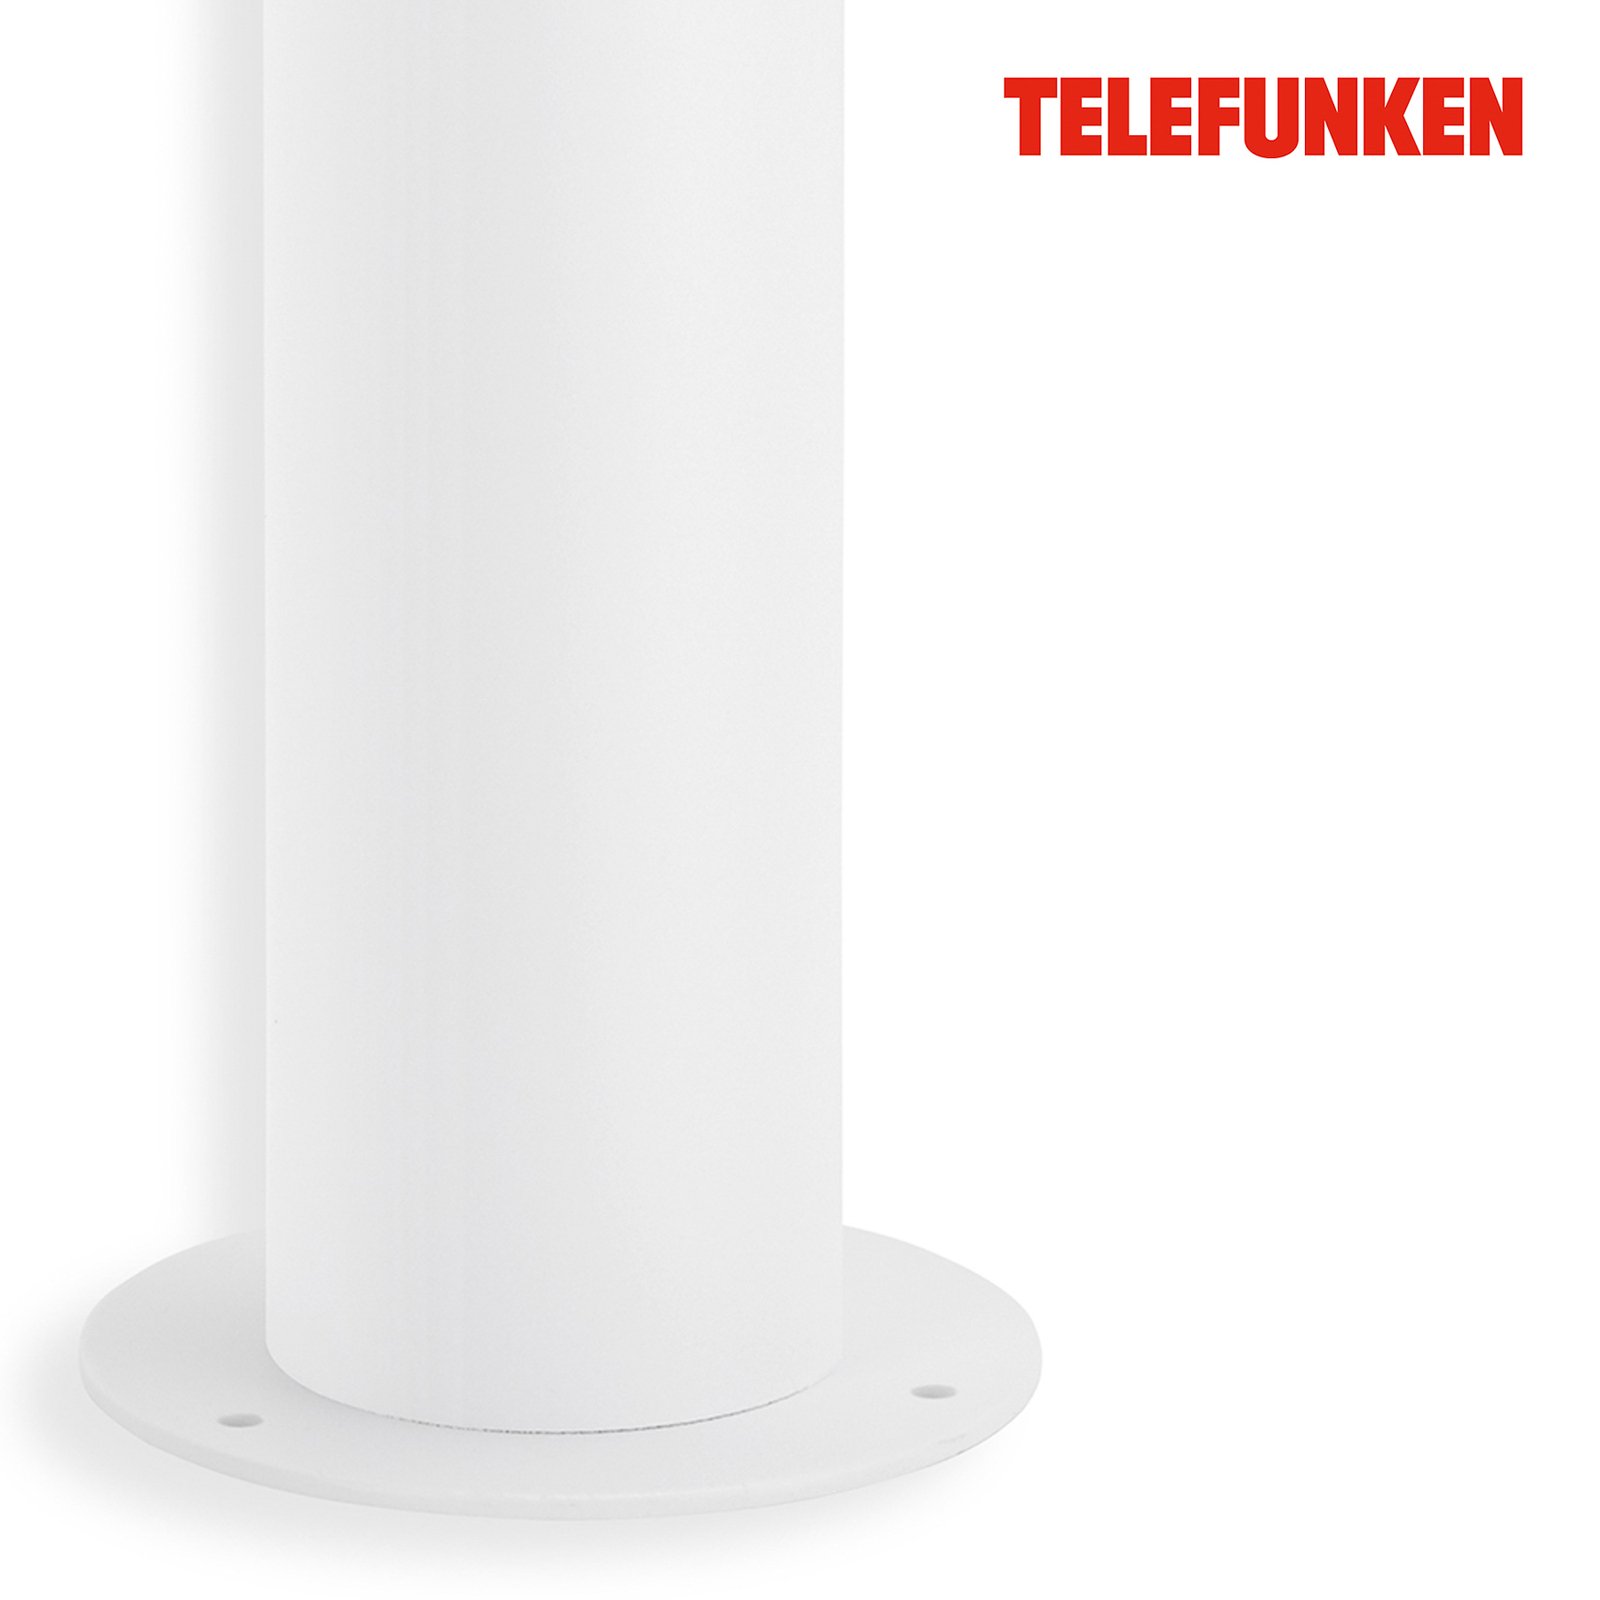 Telefunken Bristol LED-Wegeleuchte, 57 cm, weiß